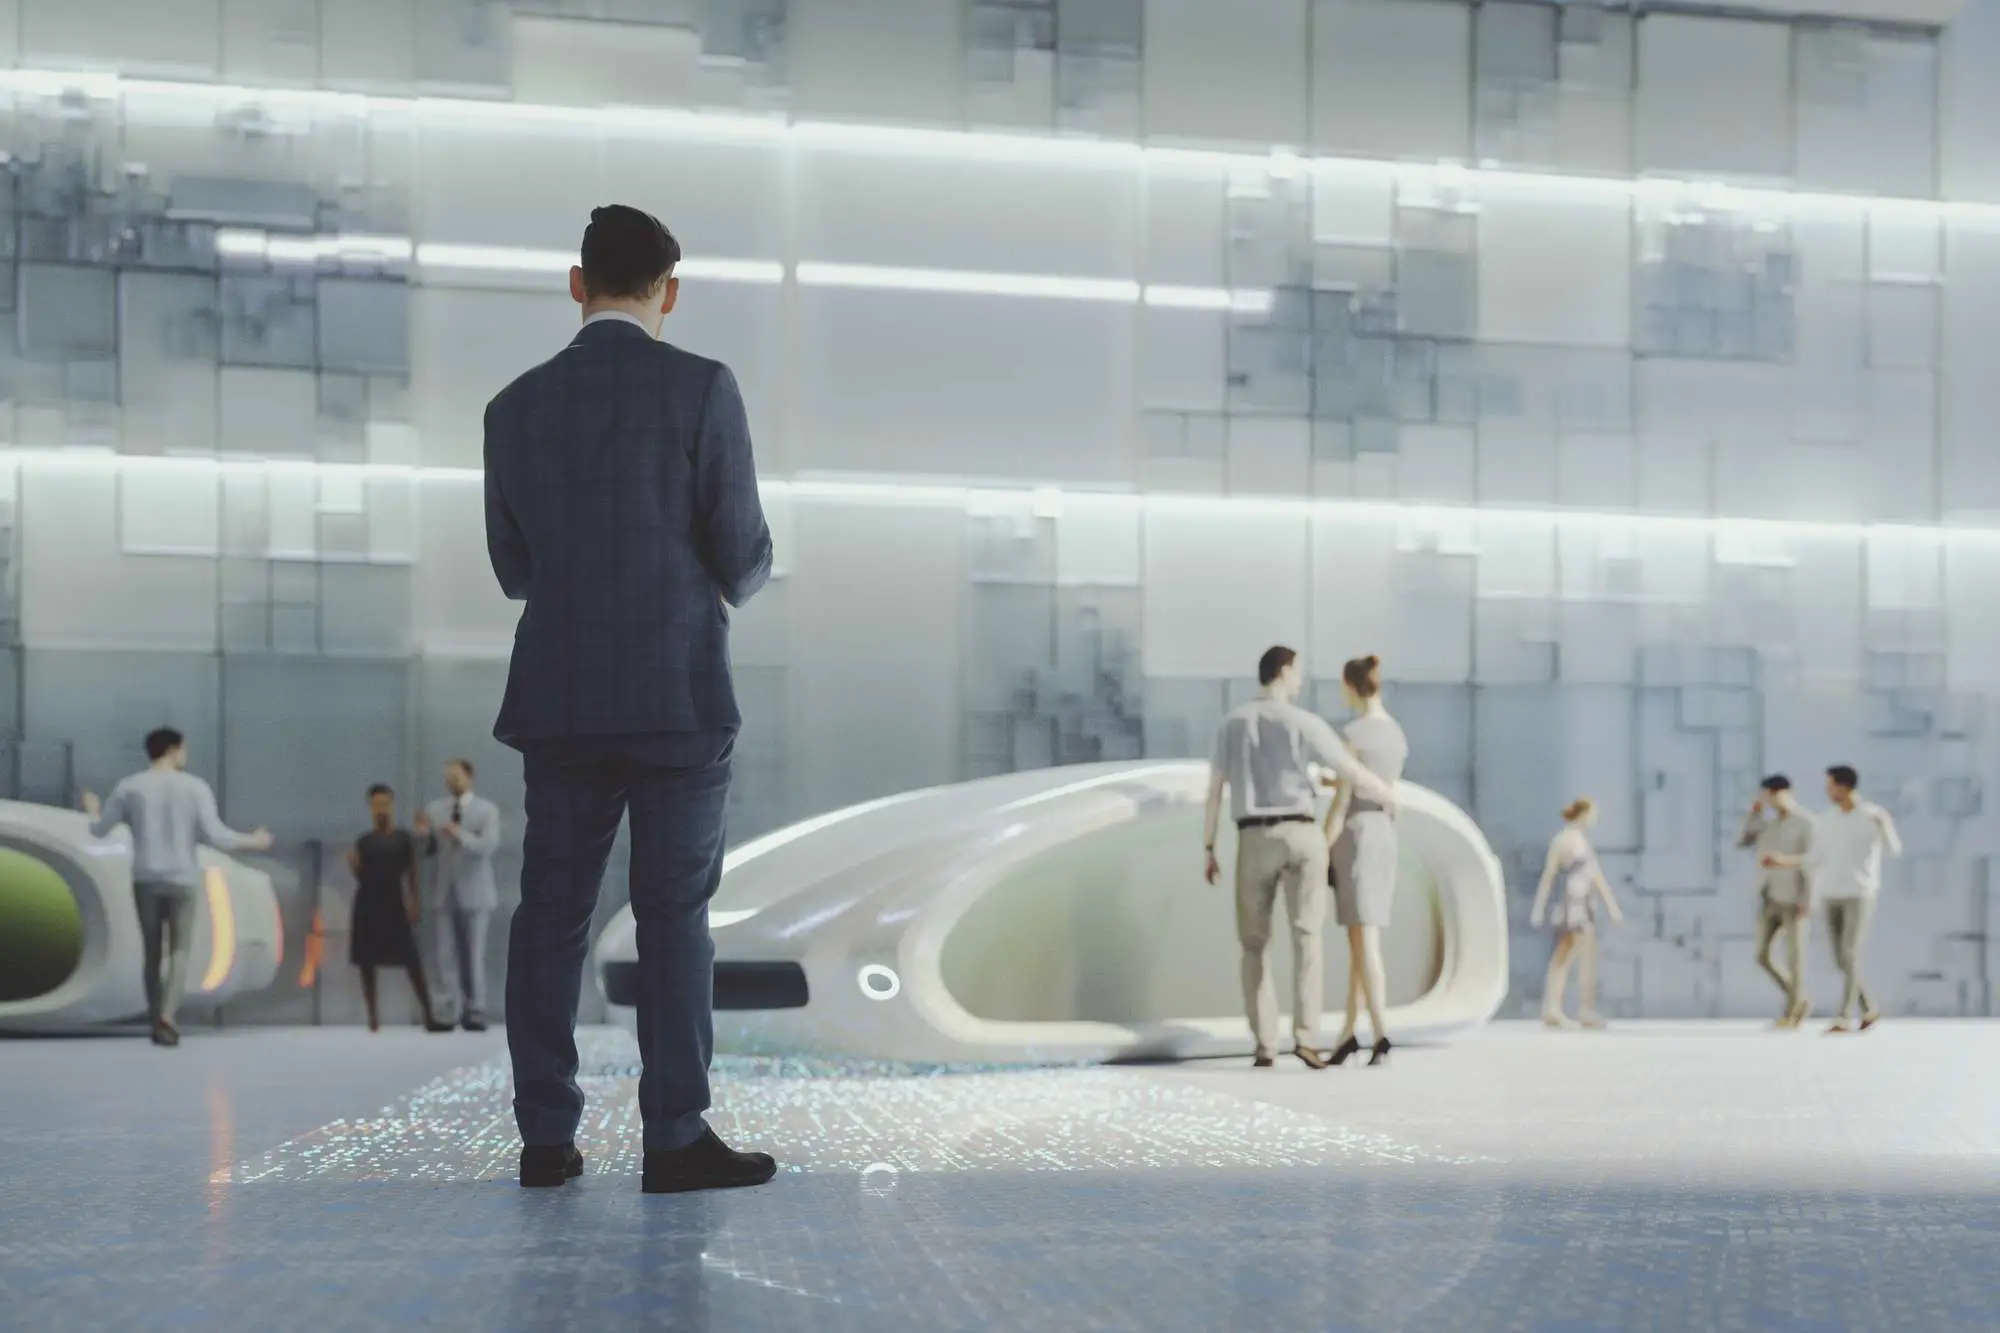 Um conceito de uma rua futurista com pessoas circulando e veículos elétricos para transporte.